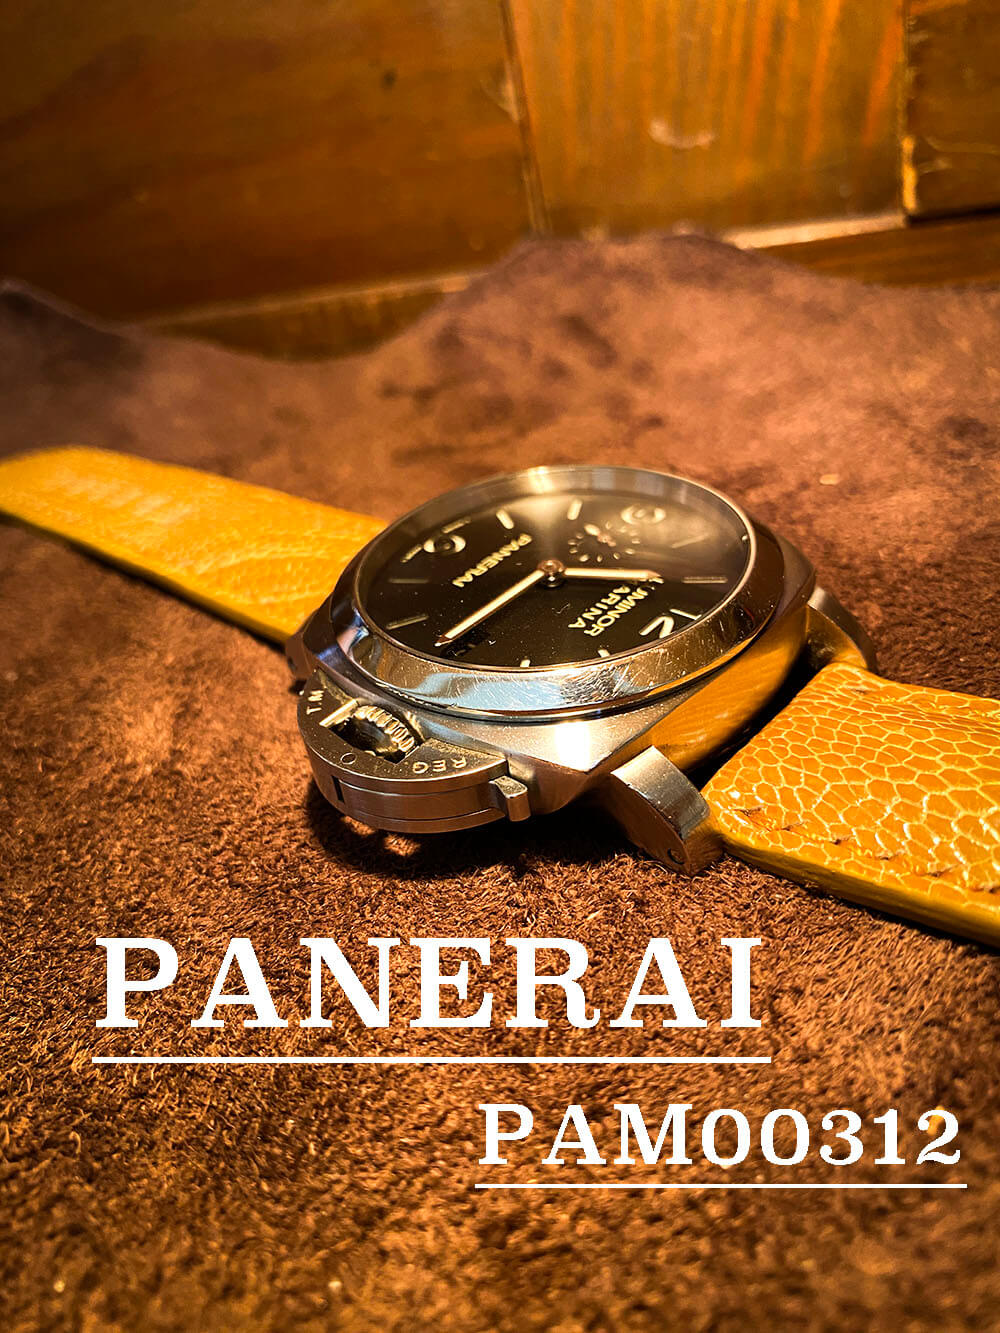 パネライ ルミノール PAM00312がお気に入り。。。page-visual パネライ ルミノール PAM00312がお気に入り。。。ビジュアル